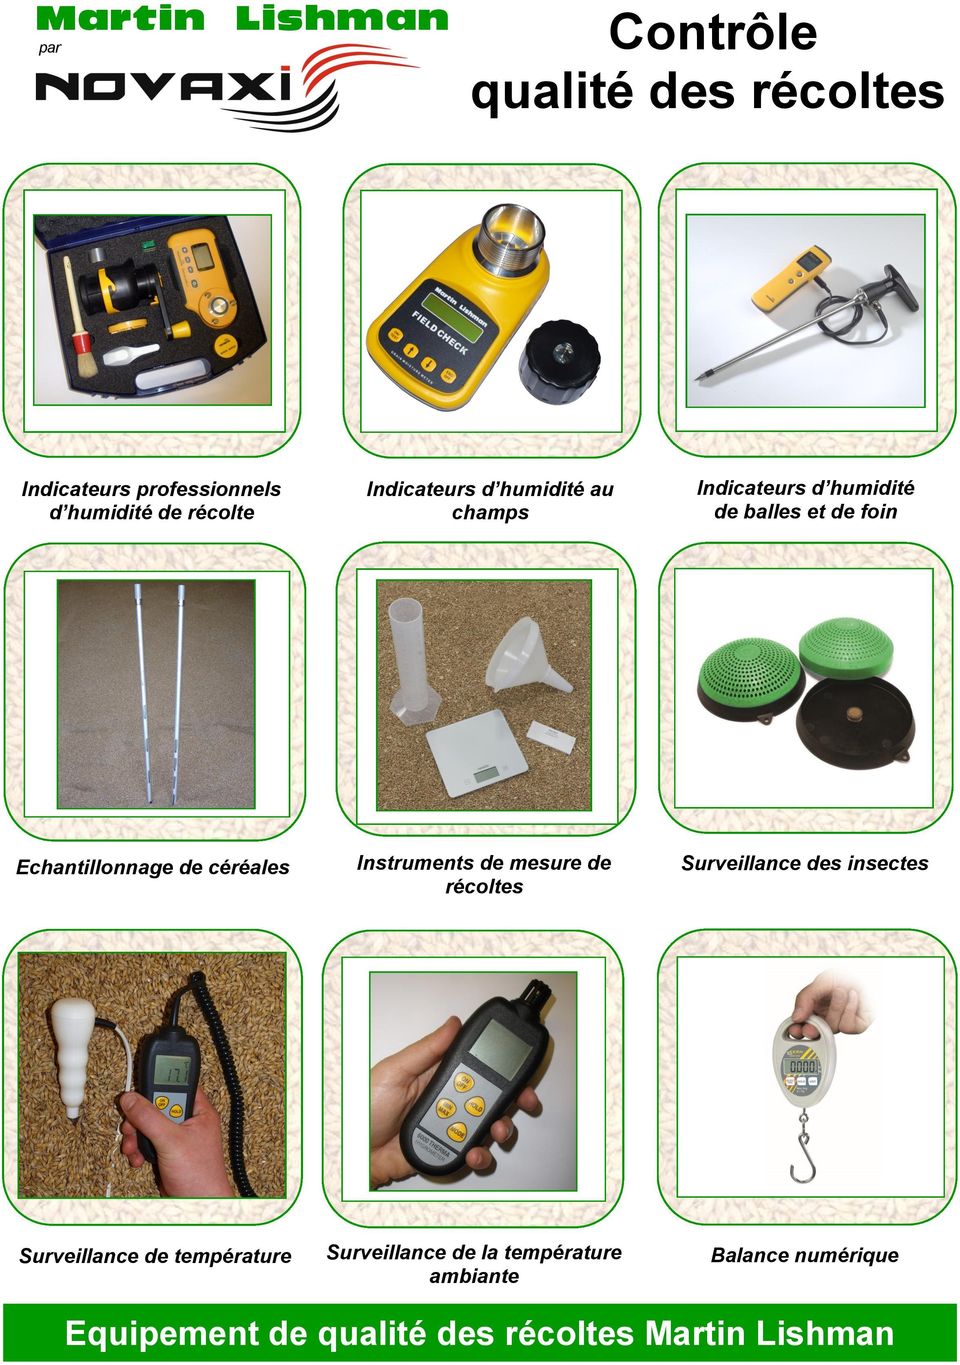 céréales Instruments de mesure de récoltes Surveillance des insectes Surveillance de température